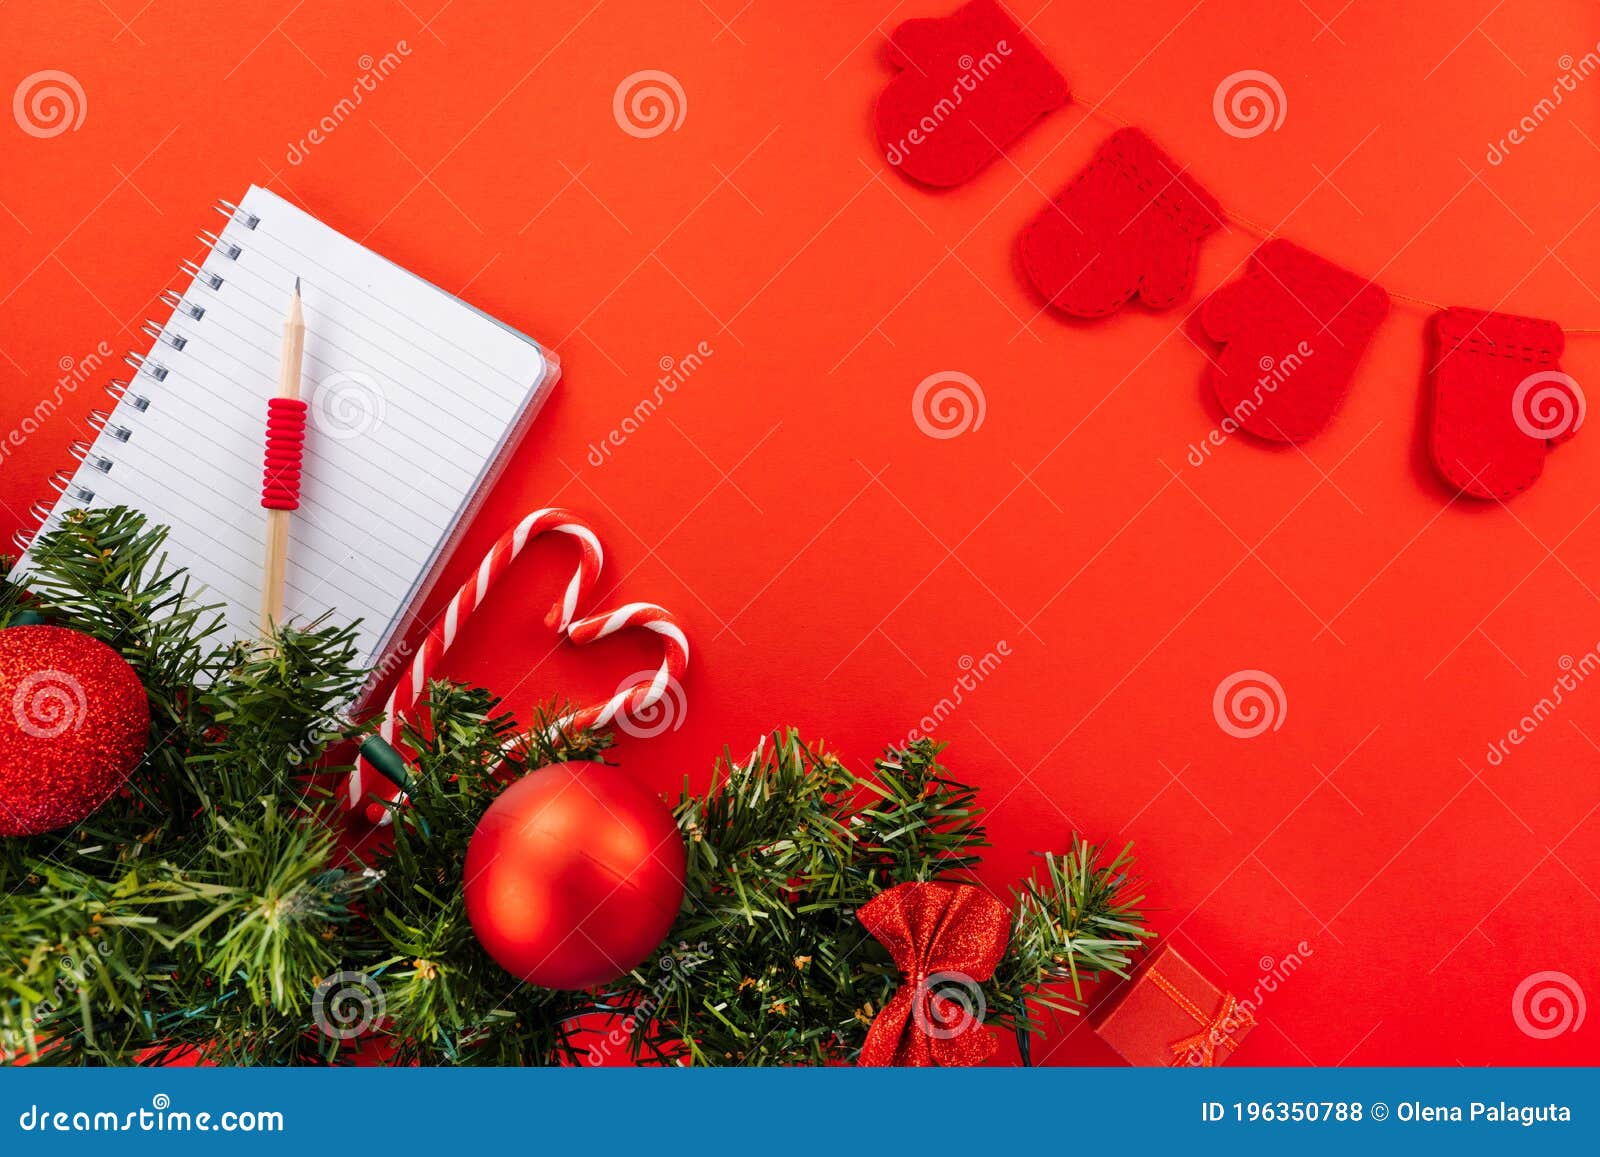 Christmas Wish List Greeting Card. Christmas Composition Stock Photo